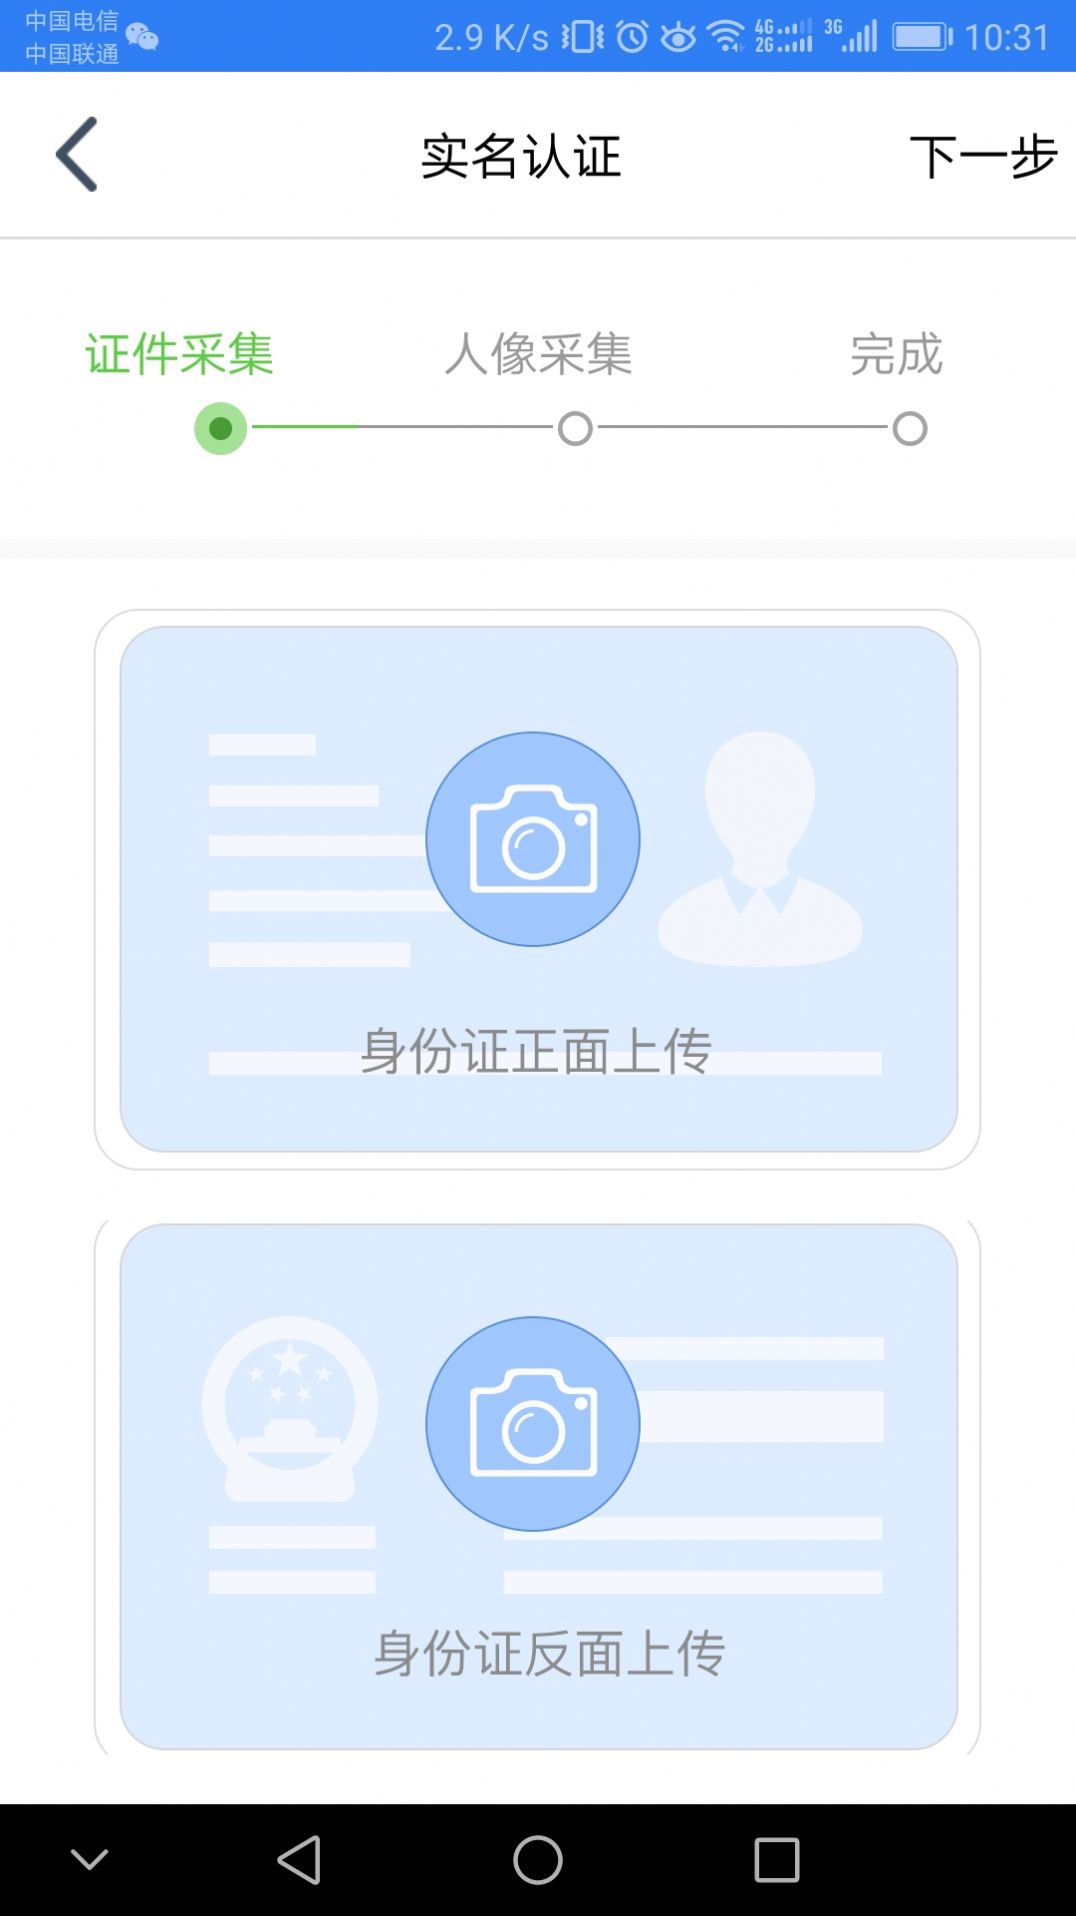 江苏市监注册登记系统app官方下载图片1